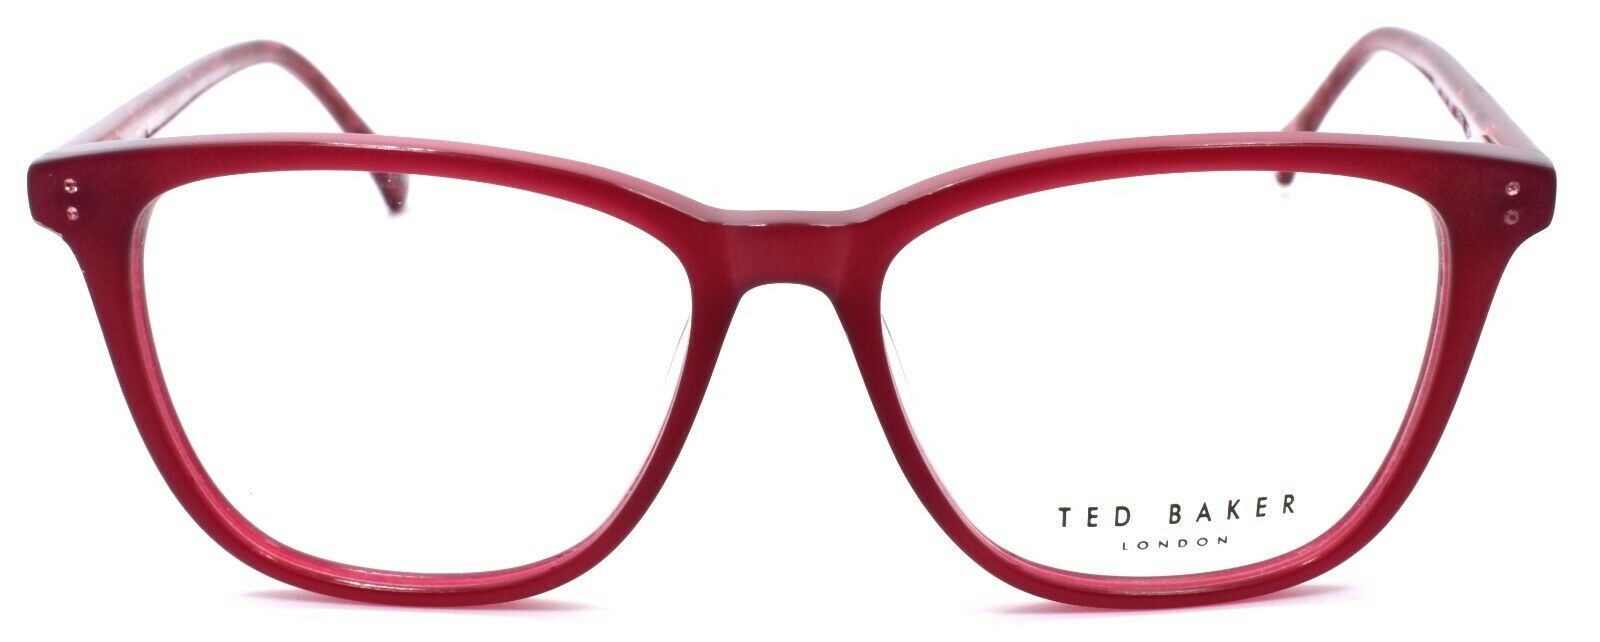 2-Ted Baker Maple 9131 205 Women's Eyeglasses Frames 51-15-140 Burgundy-4894327181902-IKSpecs